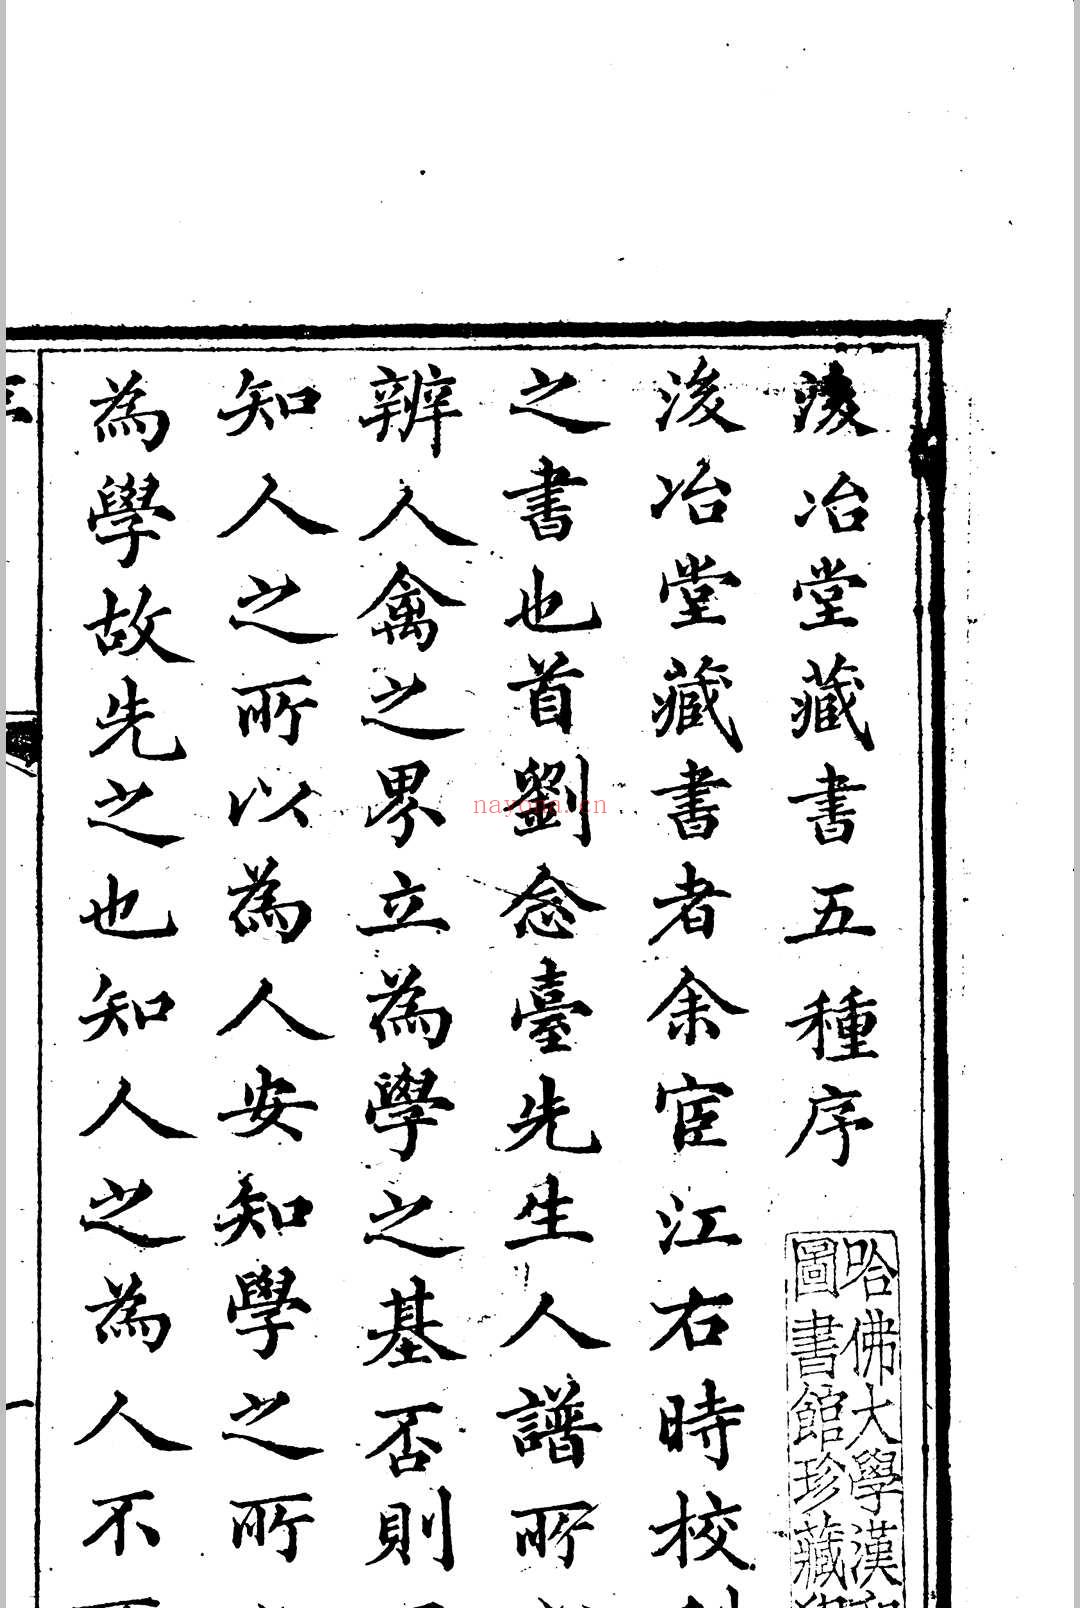 后冶堂藏书五种 三十二卷(清)刘铭惪辑